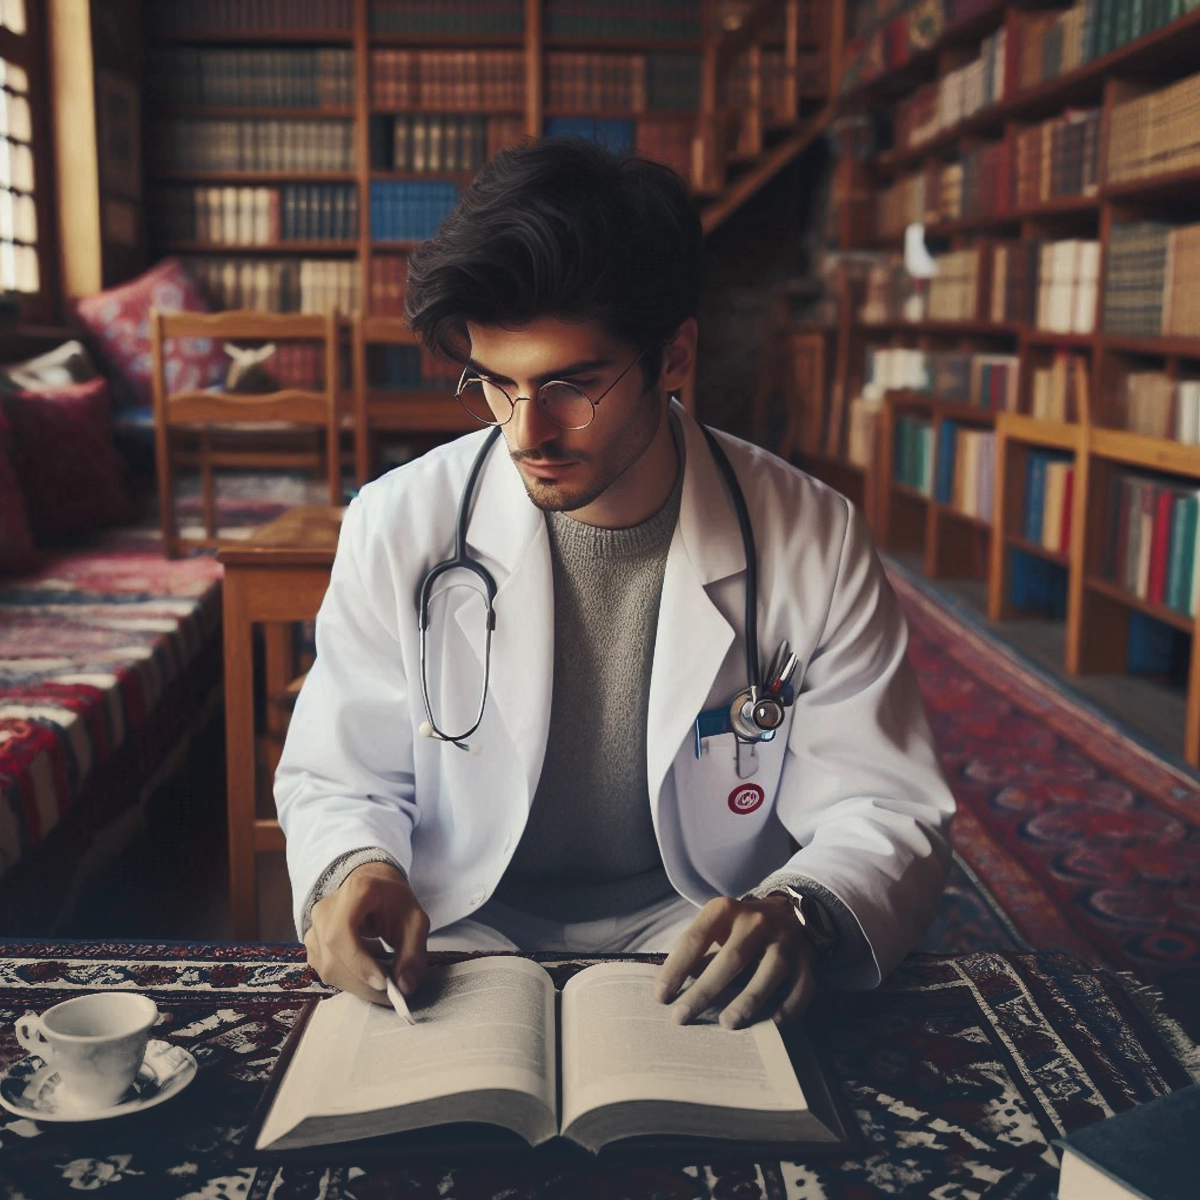 تحصیل پزشکی در دانشگاه حاجت تپه ترکیه